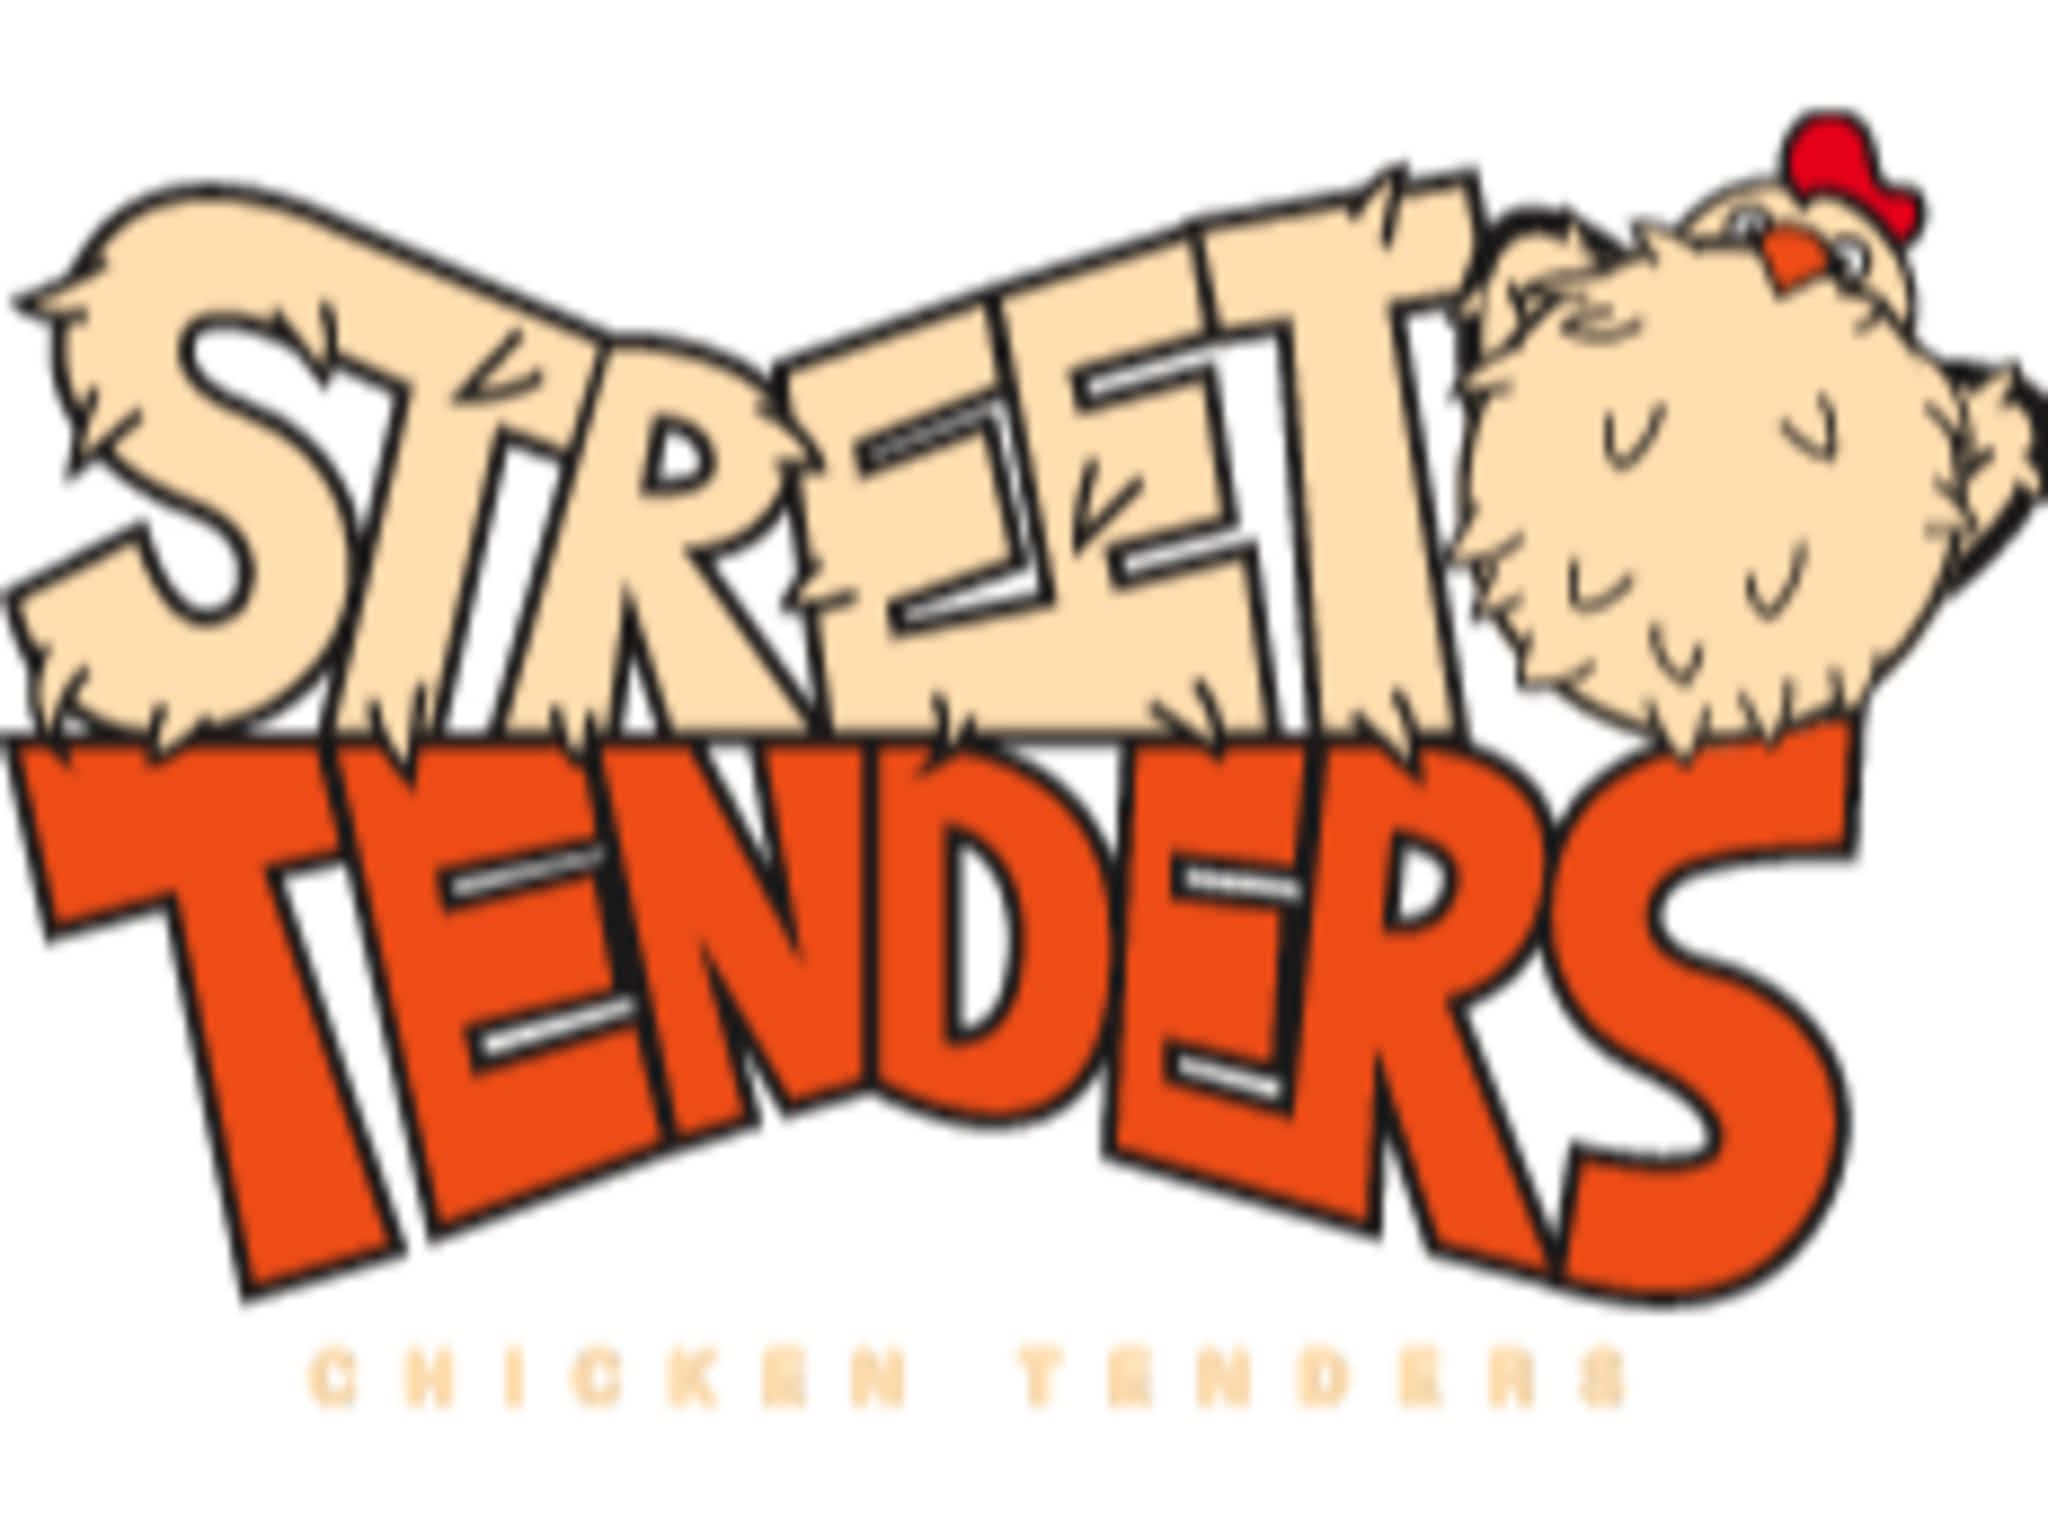 photo Street Tenders - CLOSED